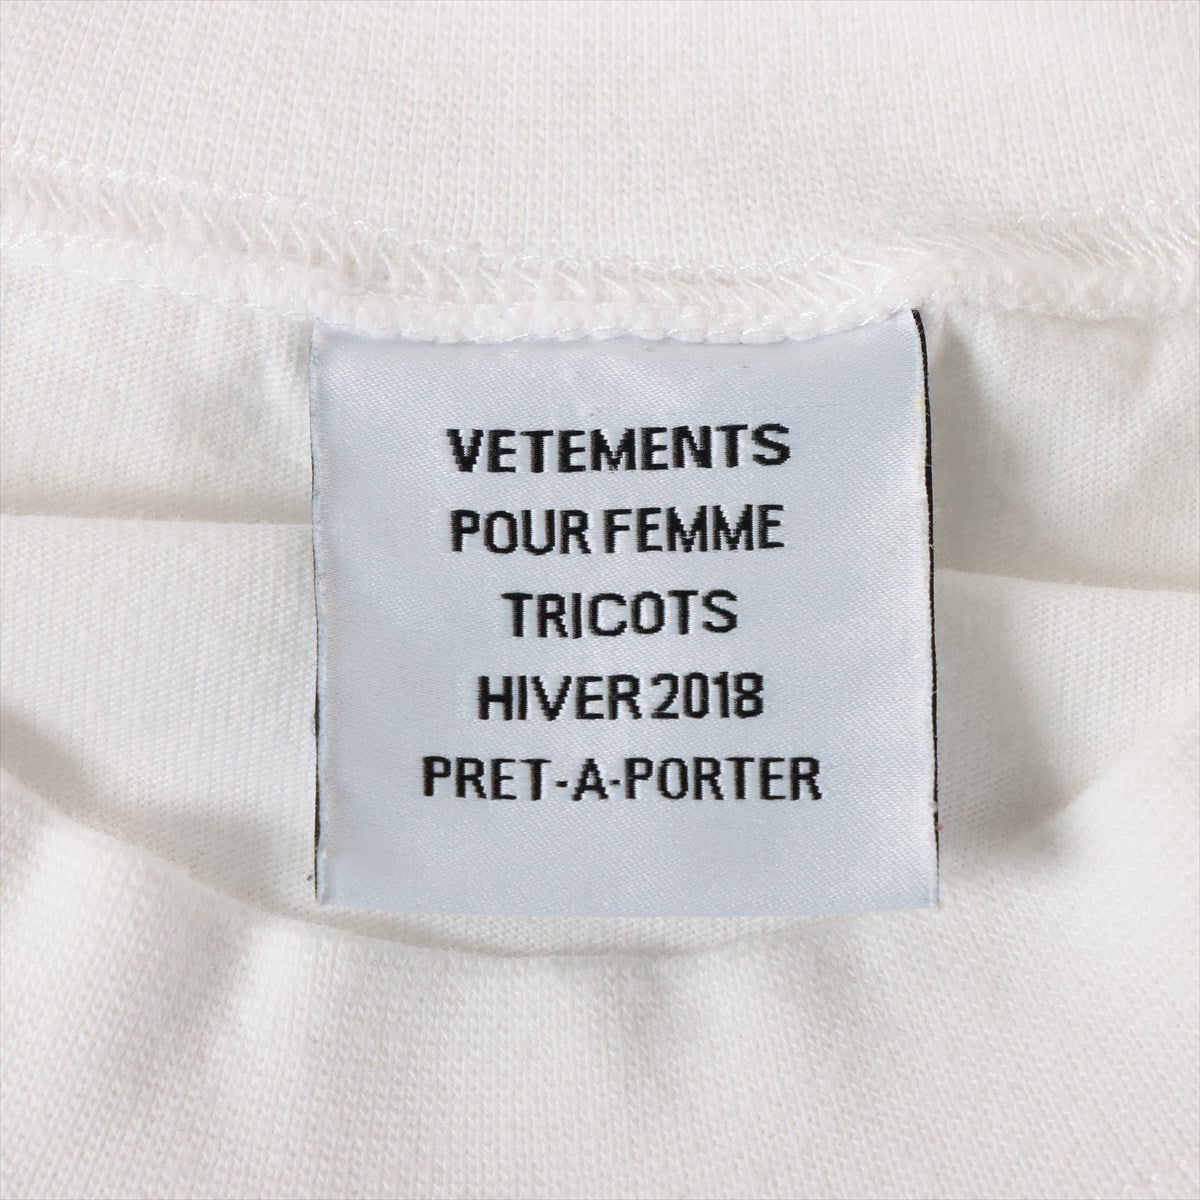 ヴェトモン コットン Tシャツ XS メンズ ホワイト  バックロゴSTAFFプリント WAH18TR16